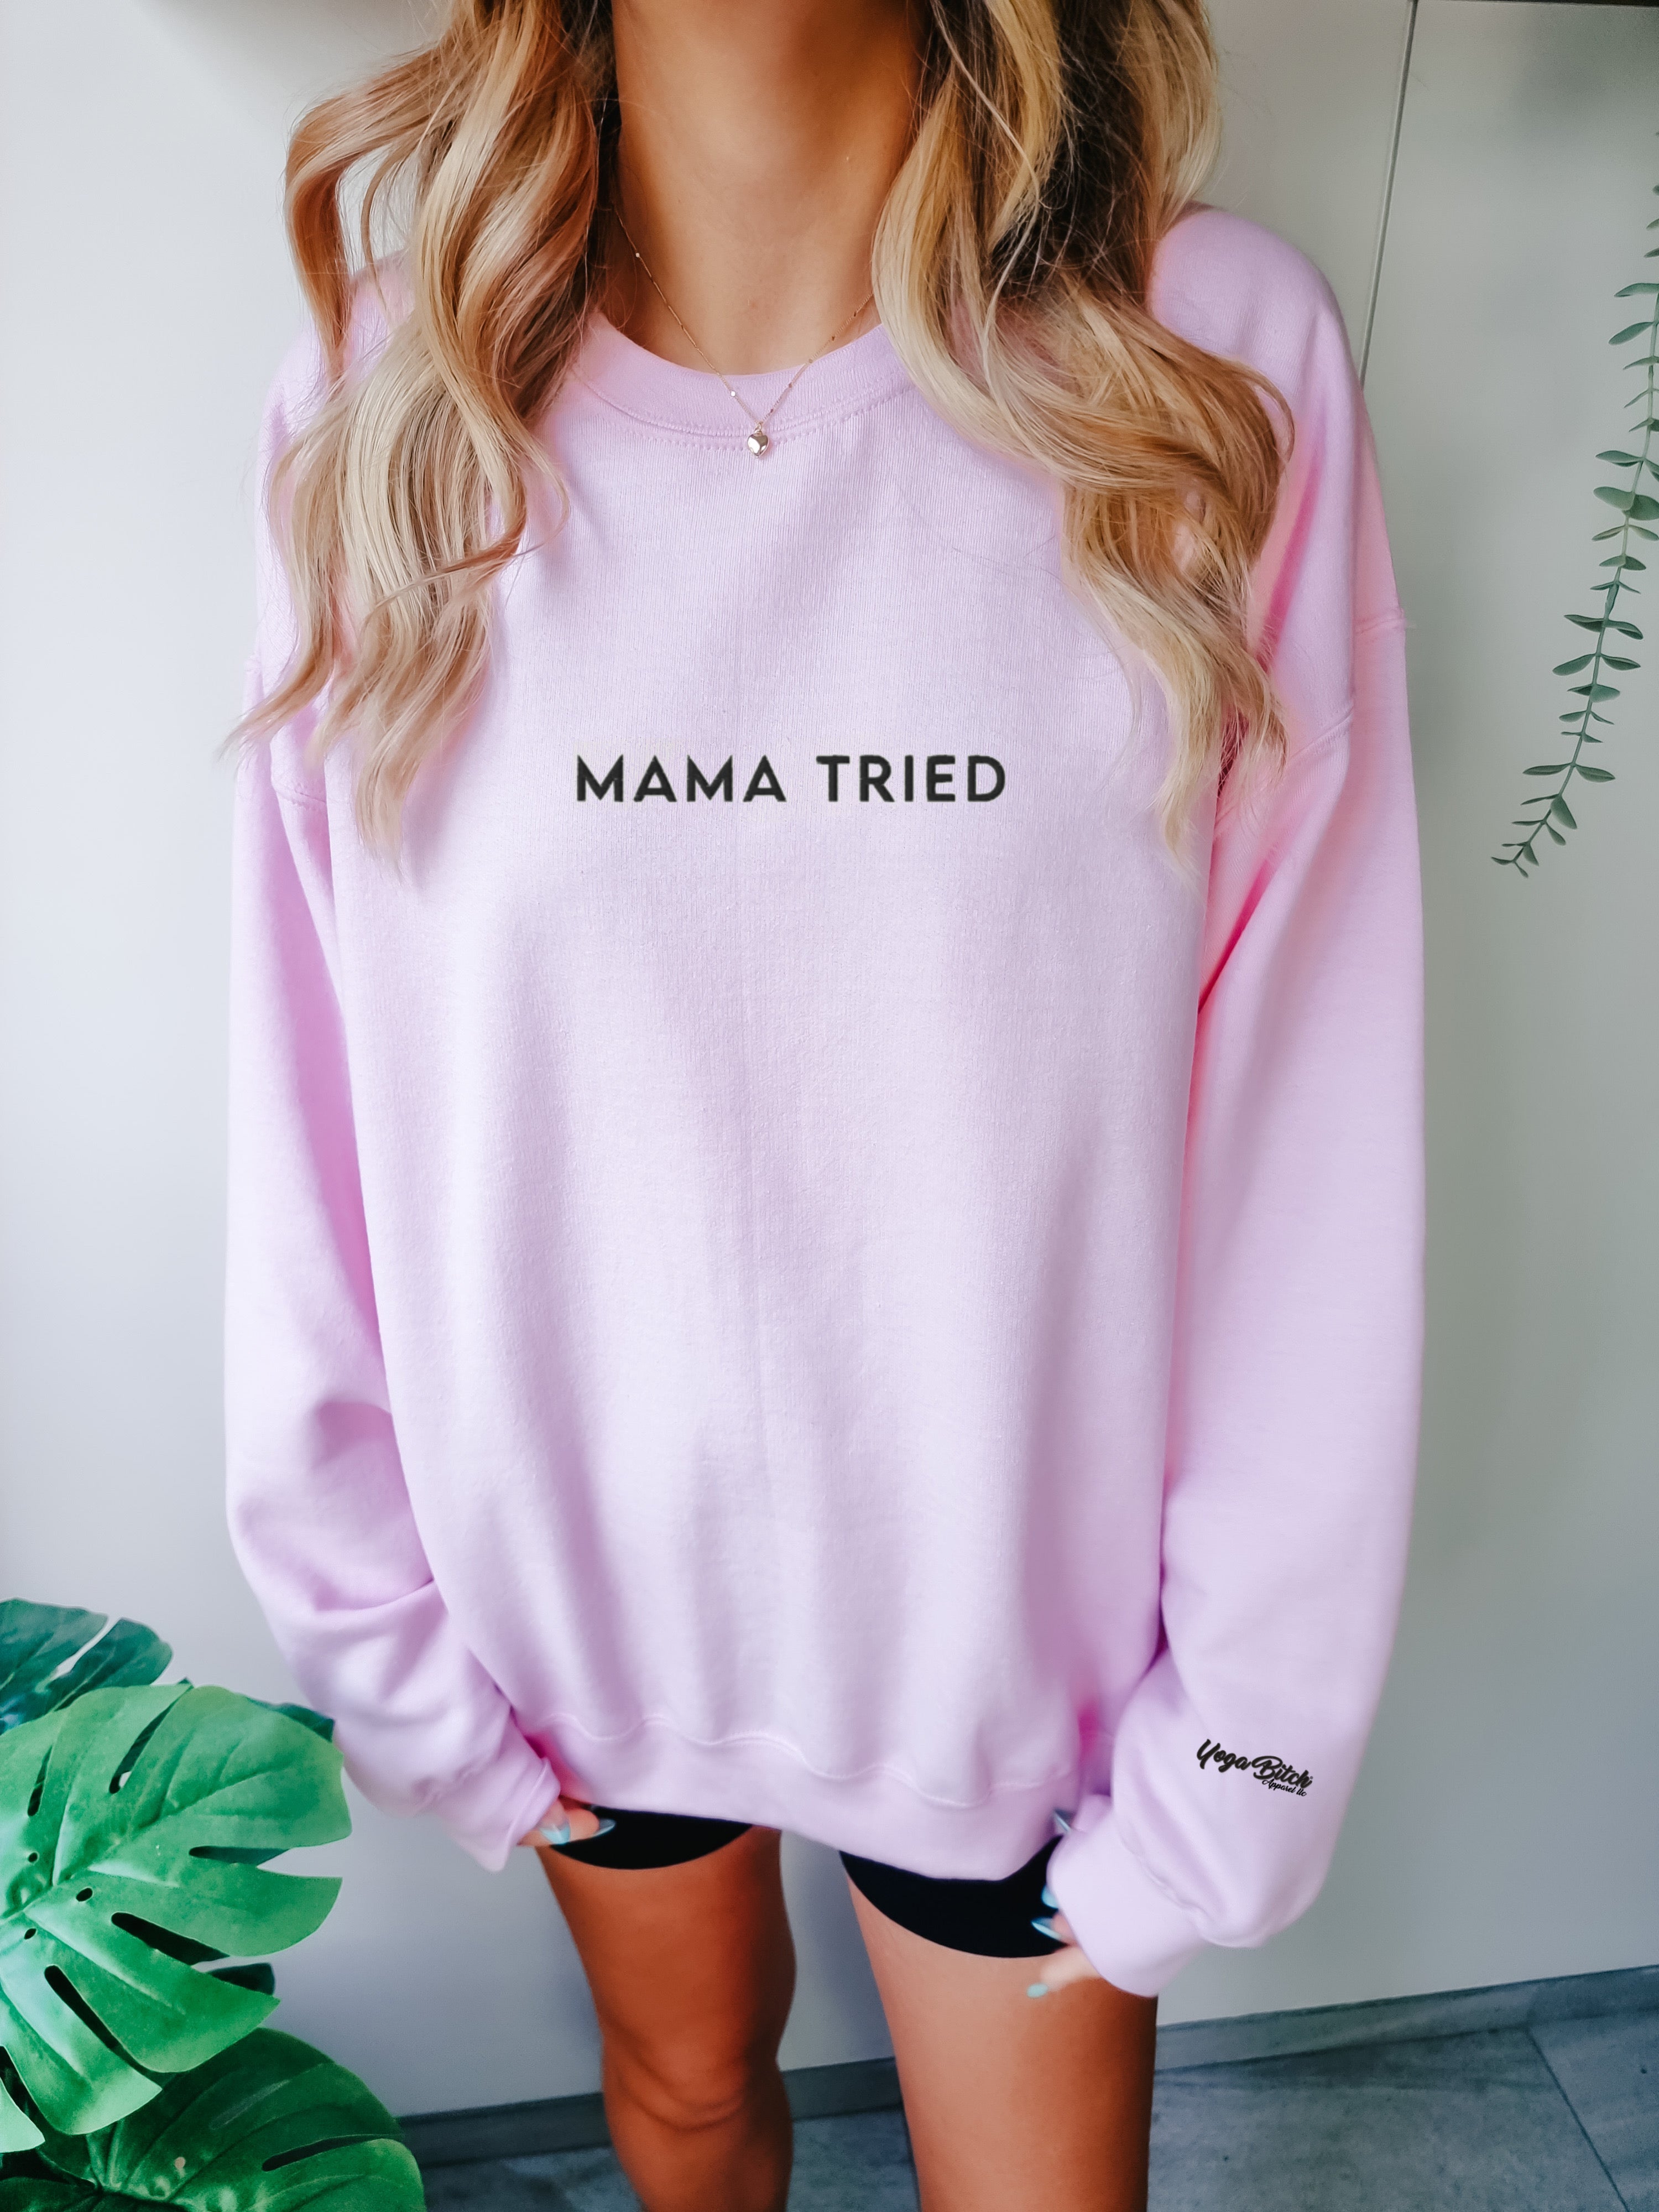 Mama Tried Crew Neck Sweatshirt - Yoga Bitch